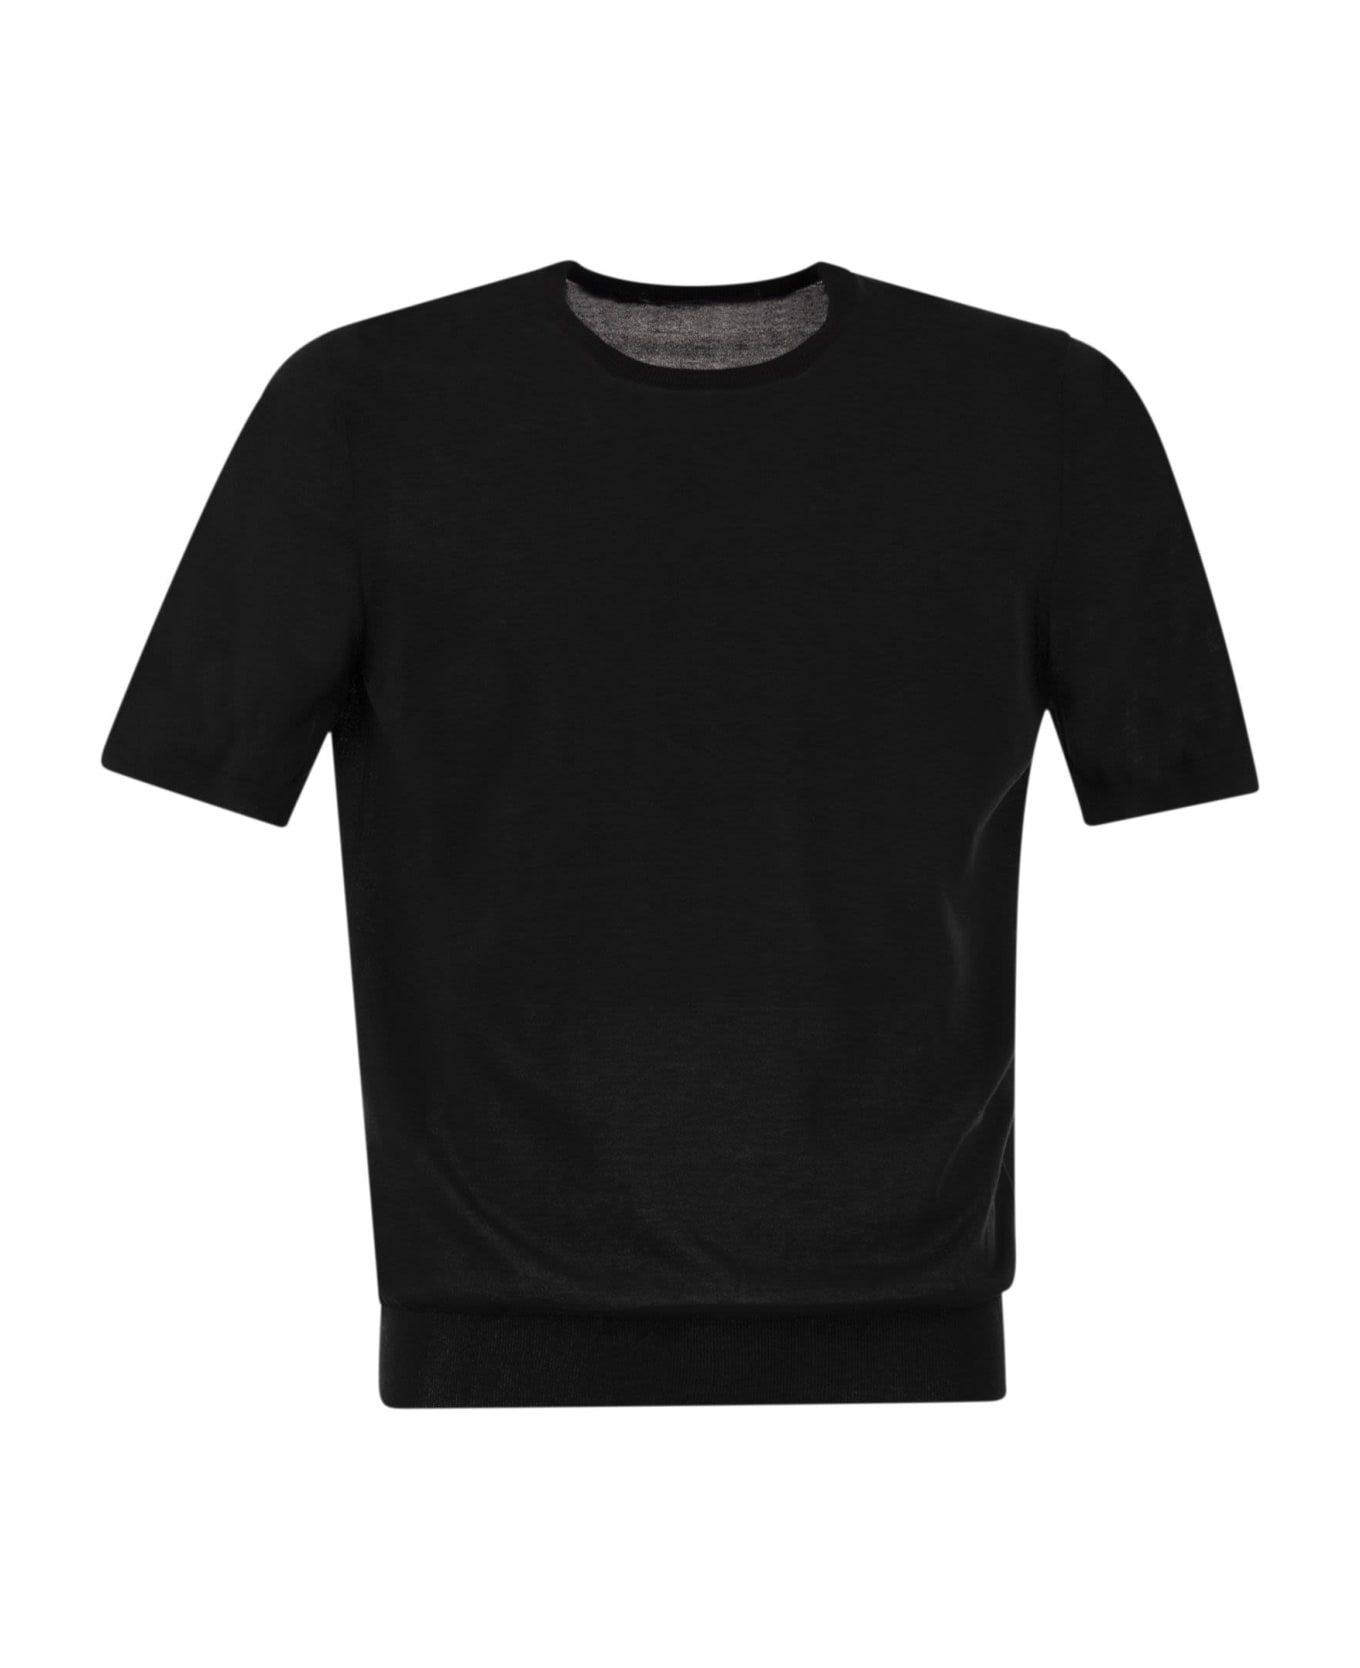 Tagliatore T-shirt In Cotton Fabric - Black